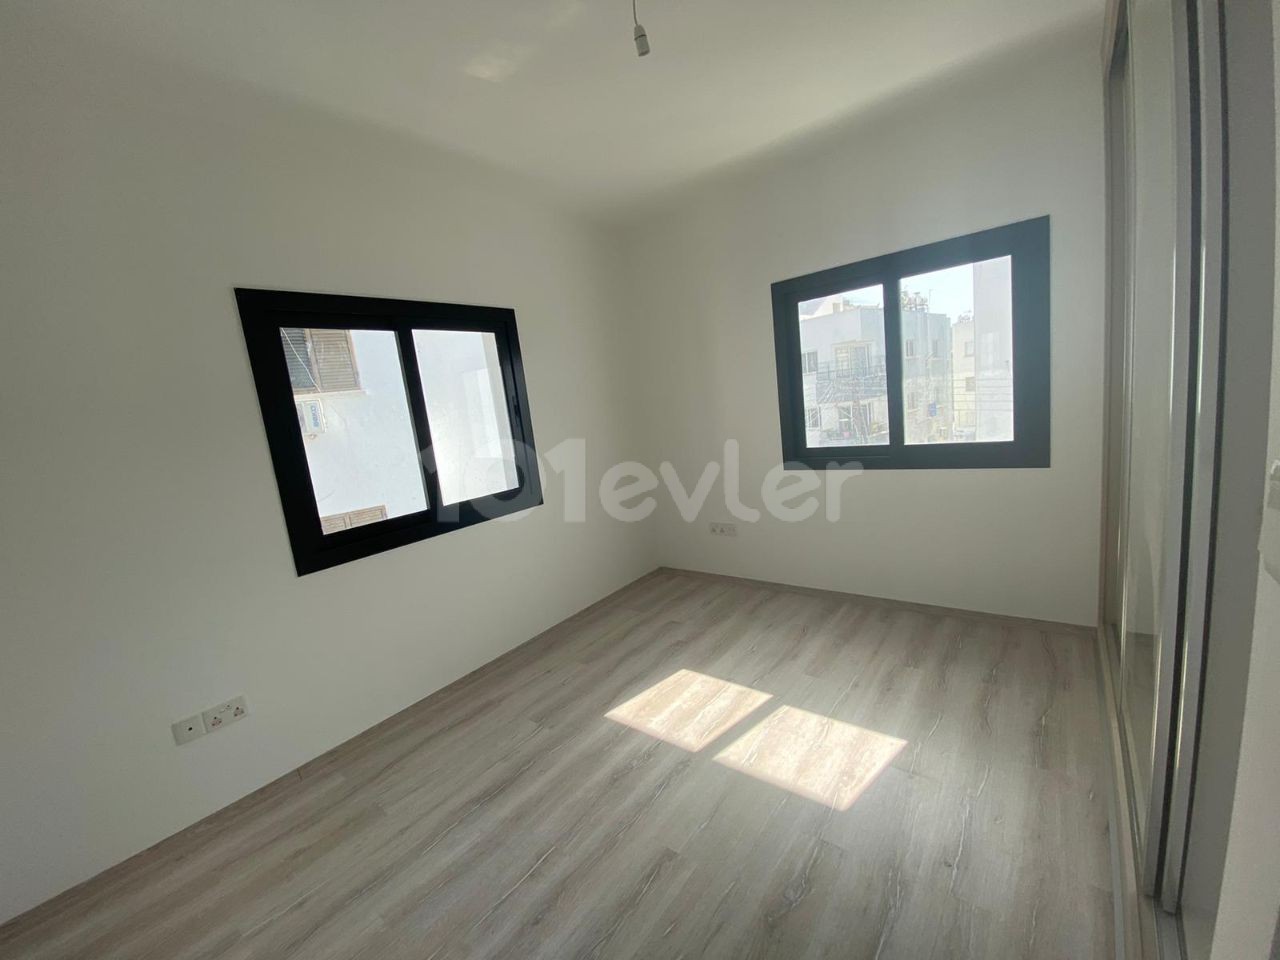 3+1 Wohnung zum Verkauf in Nikosia Ortaköy 128 m2 und 2 + 1 Penthouse 110+16 m2 Terrasse 78,000 STG ** 